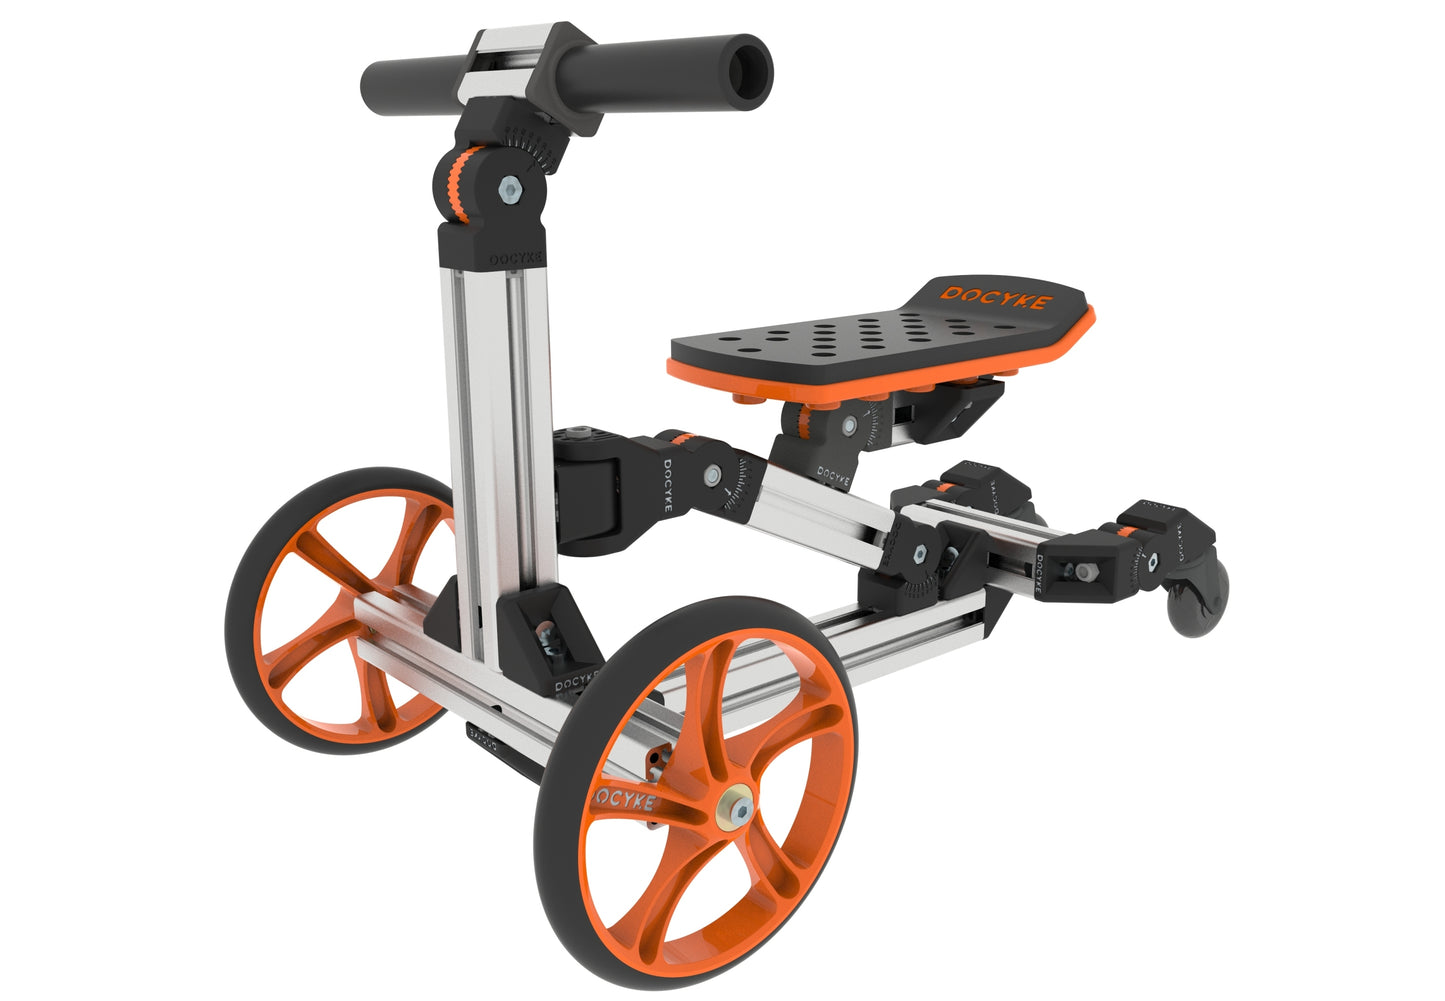 Bộ công cụ xây dựng KidRock Xe đạp thăng bằng 20 trong 1 Đồ chơi trẻ em không có bàn đạp dành cho trẻ từ 1 đến 6 tuổi Bộ công cụ xây dựng Xe tay ga ngồi/đứng cho trẻ em Bộ M phổ biến nhất (Không dùng điện)